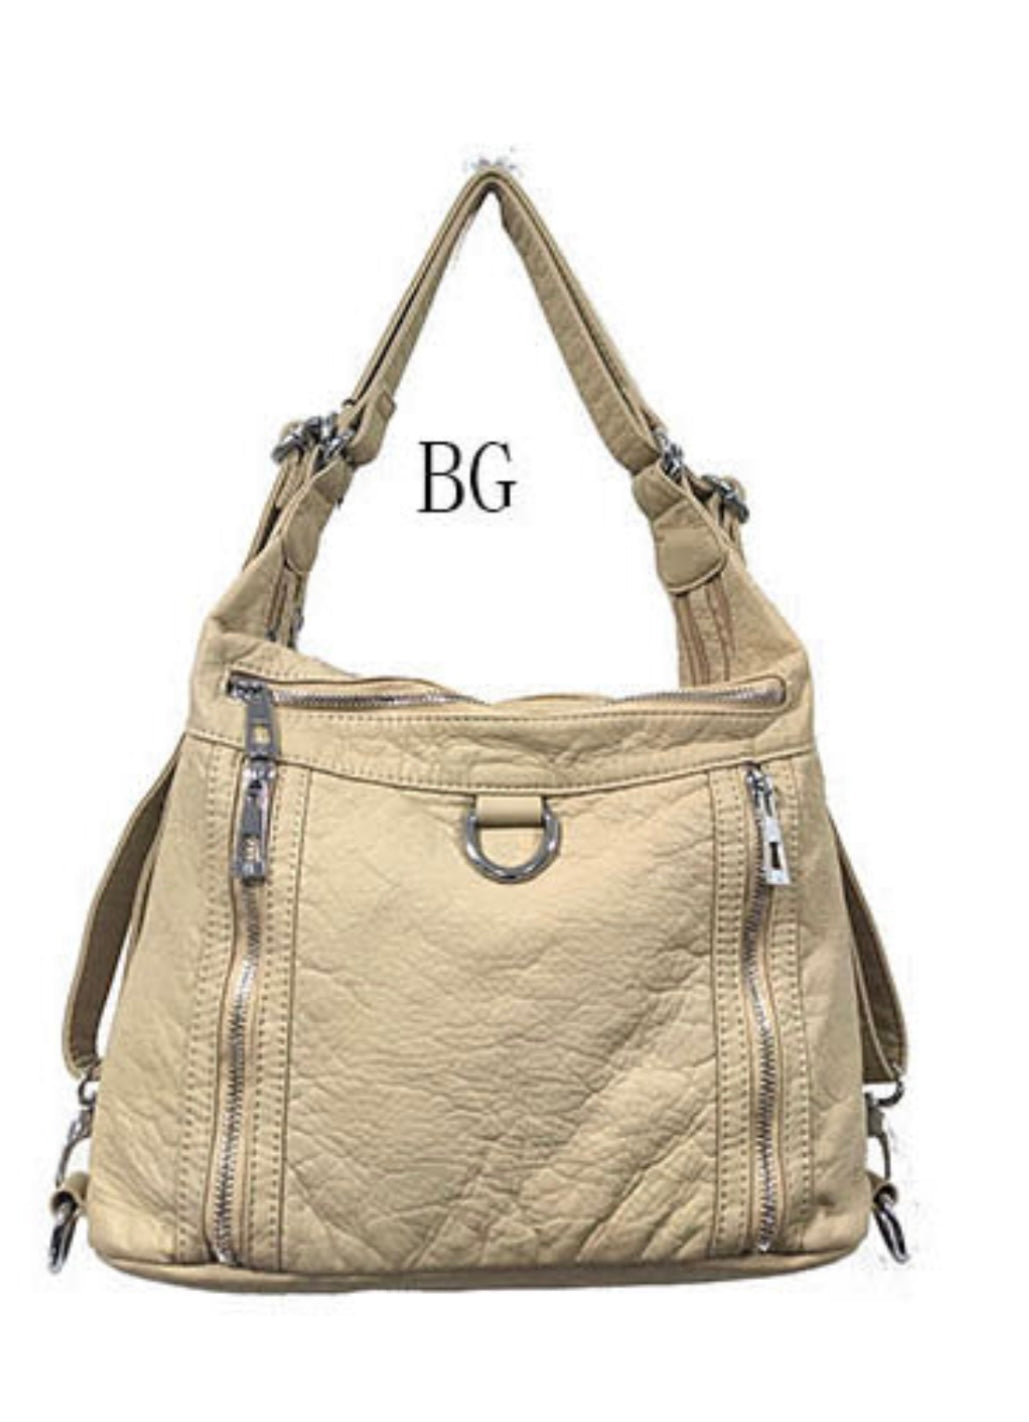 Beige 3 in 1 style metal loop backpack purse